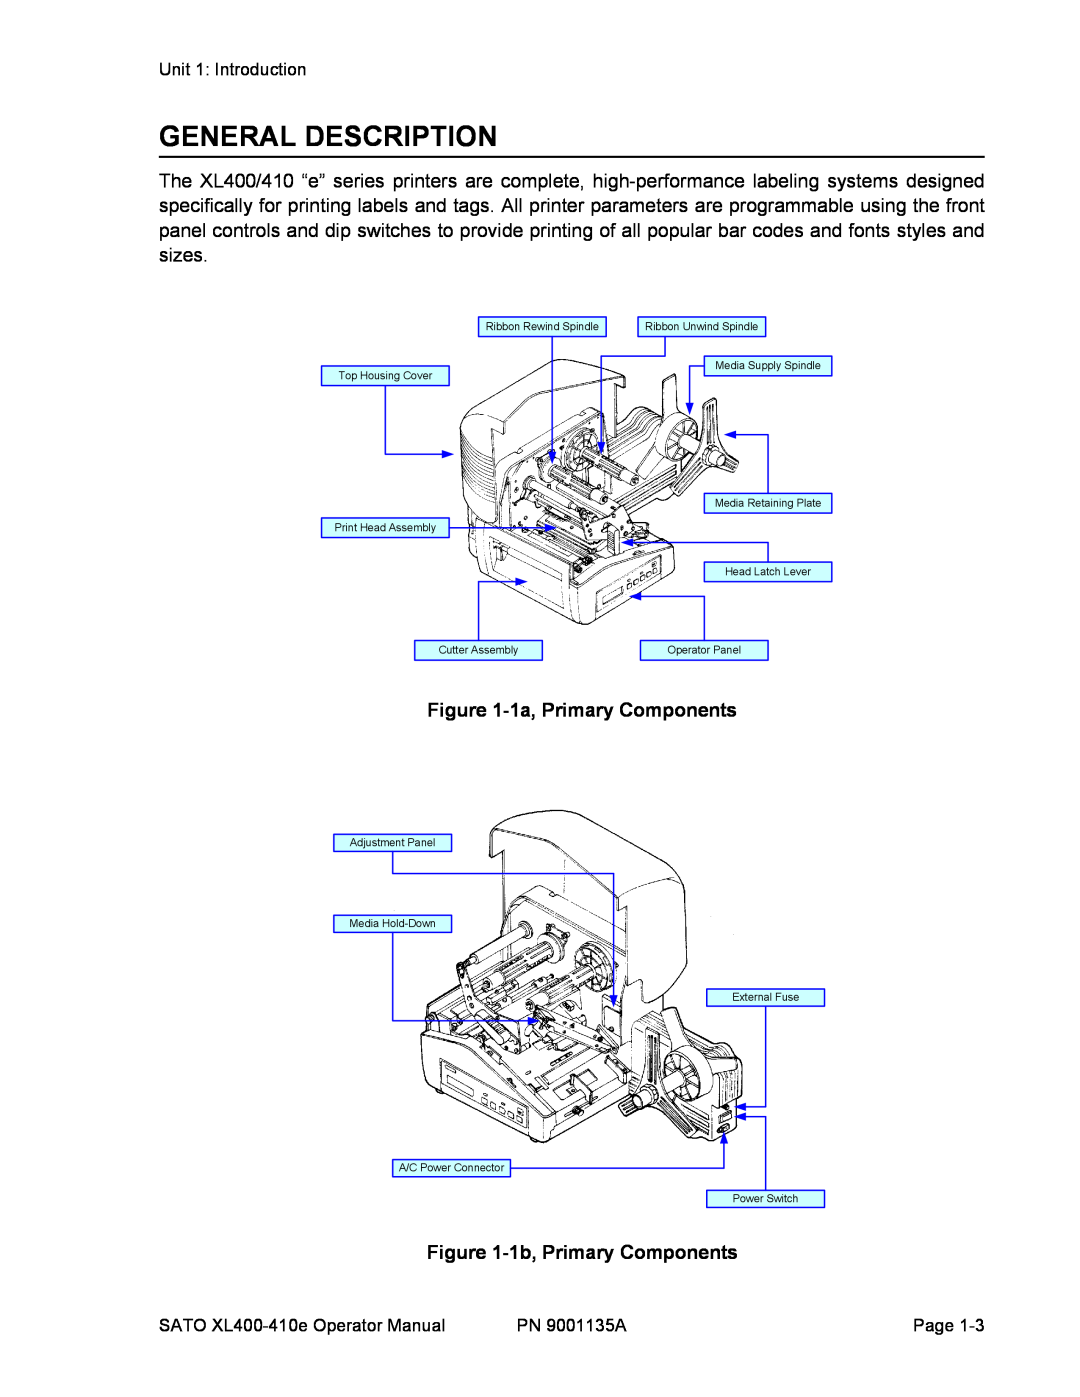 SATO 400e, 410e manual General Description, 1a, Primary Components, 1b, Primary Components 